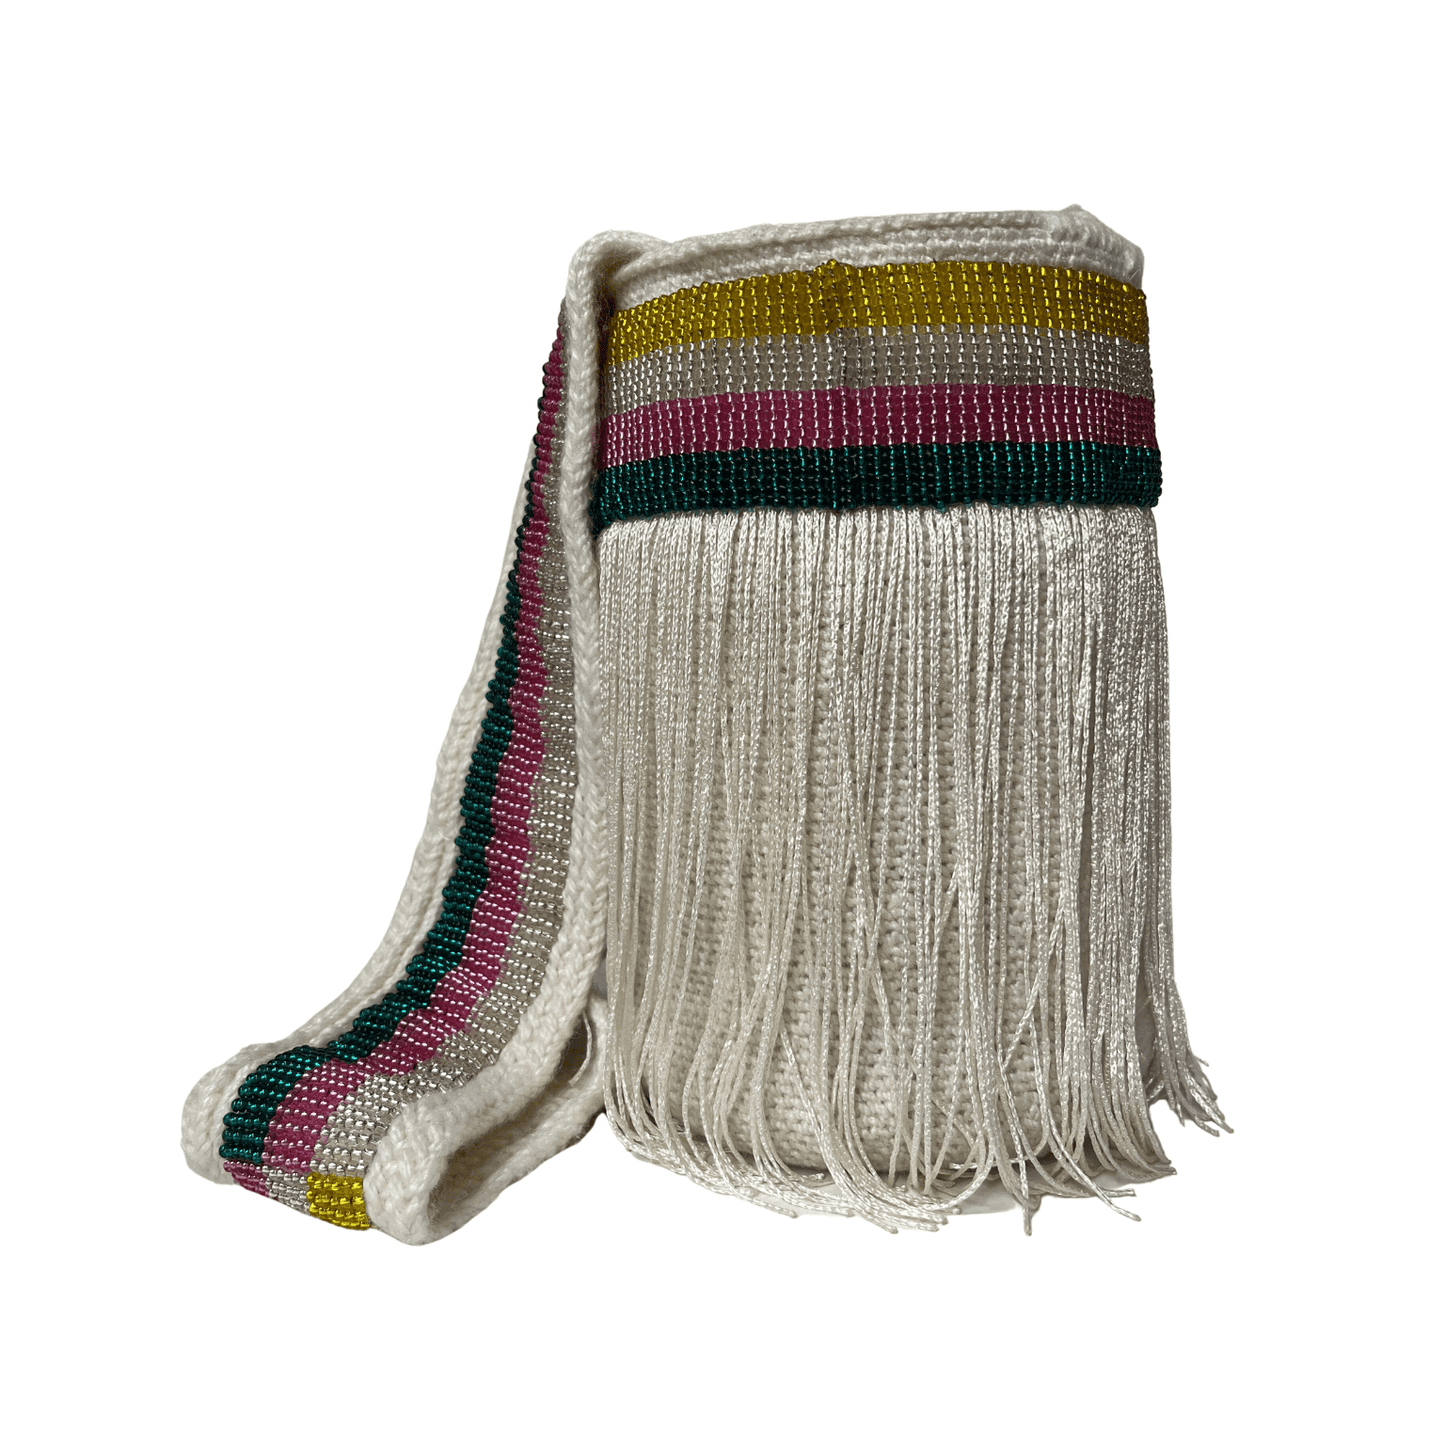 Mochila kankuama para mujer decorada con mostacillas de colores y lindos flecos